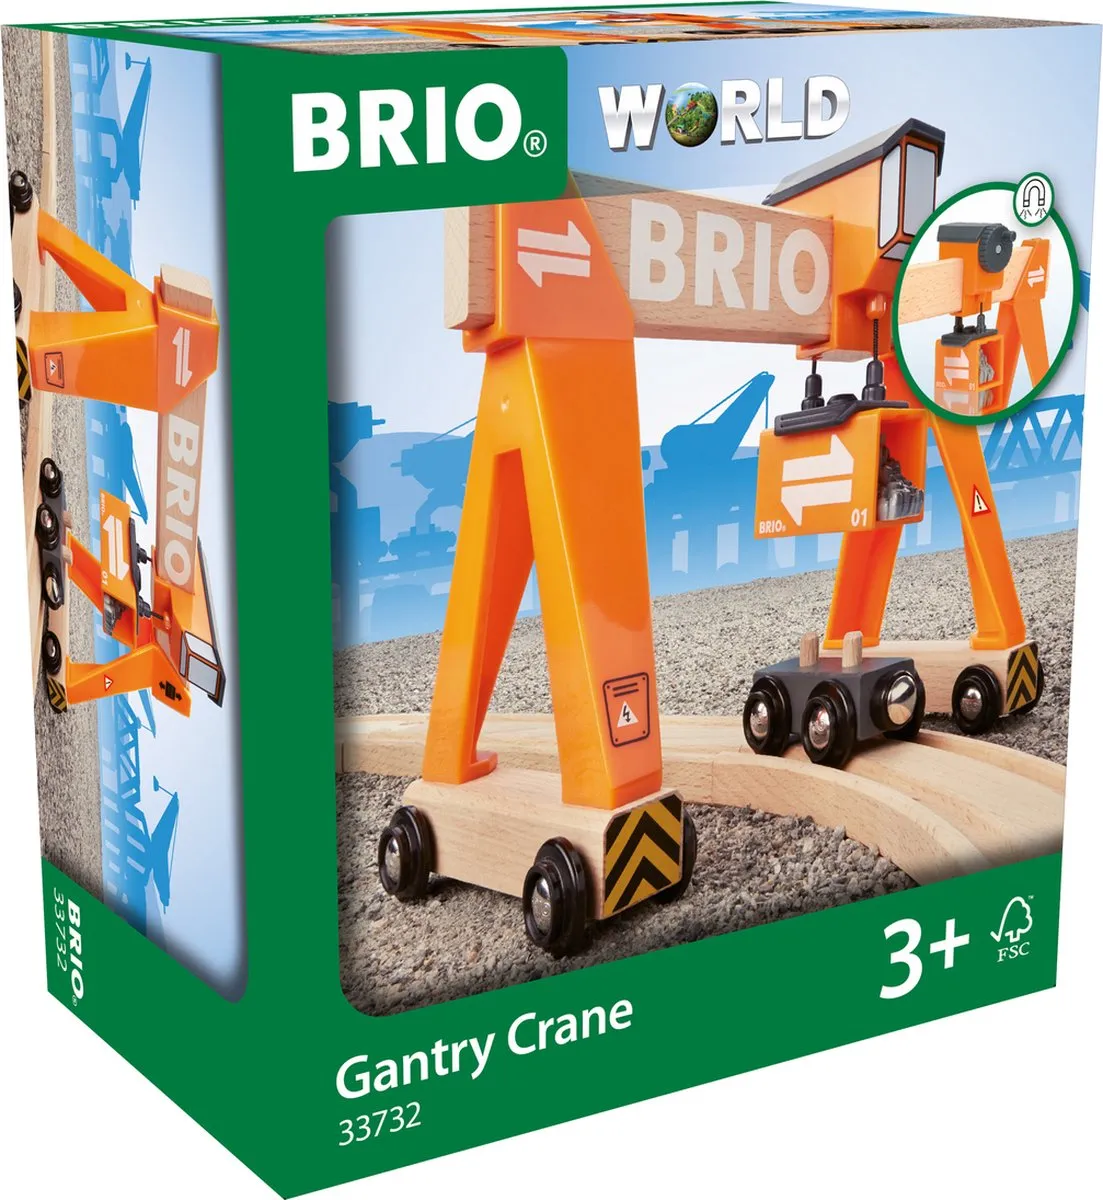 BRIO Container laadkraan - 33732 speelgoed